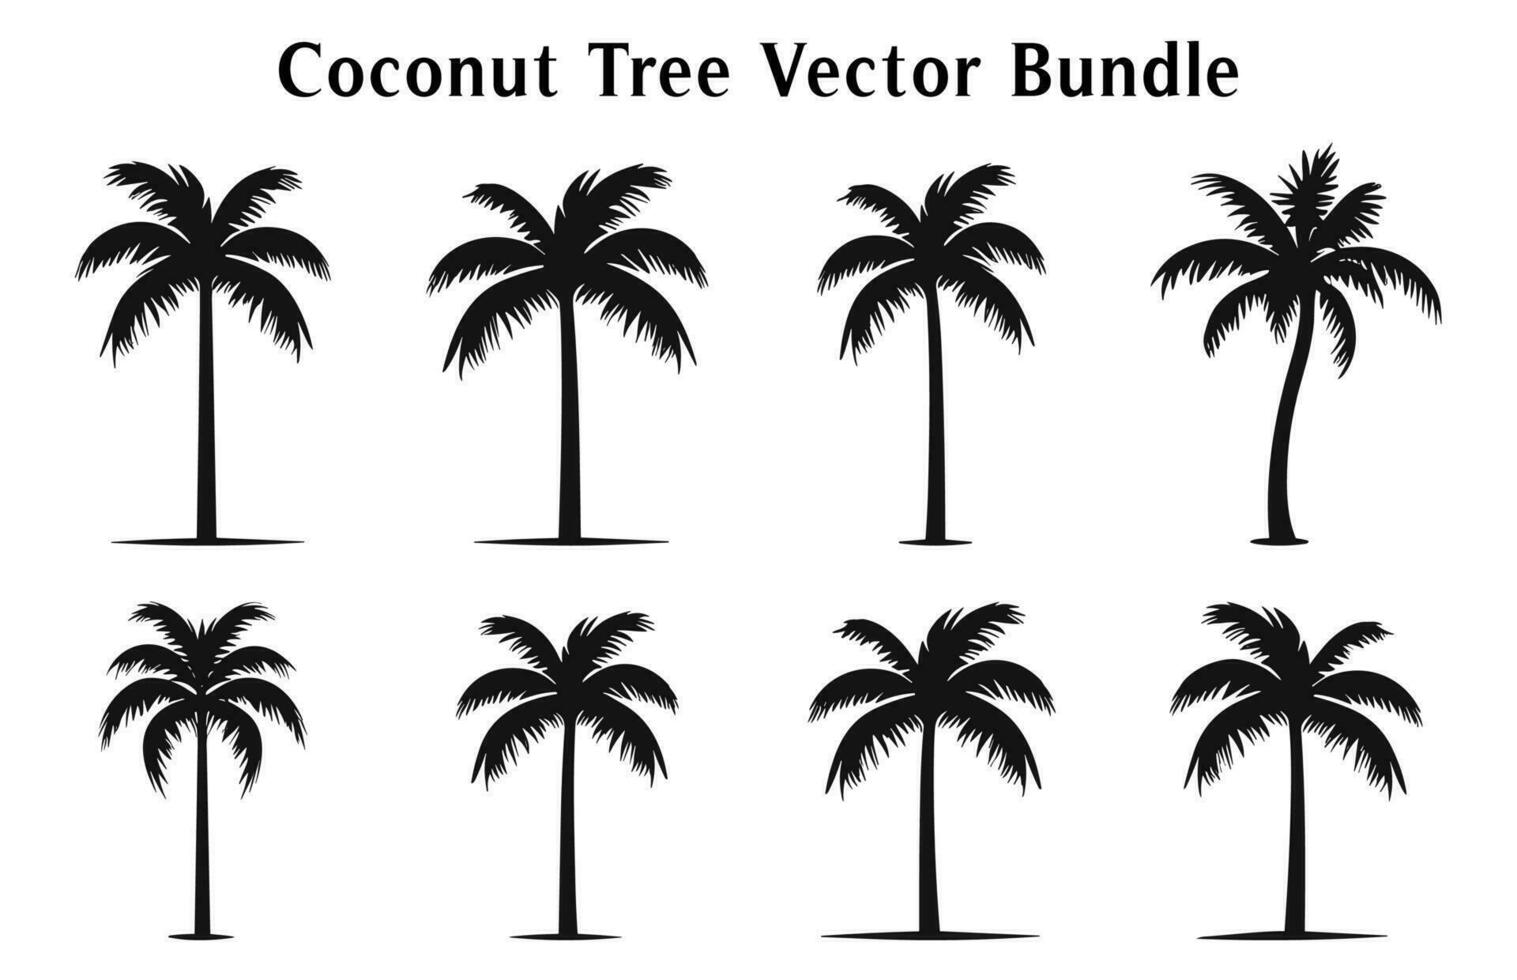 Coco arboles silueta vector gratis, Coco árbol siluetas haz